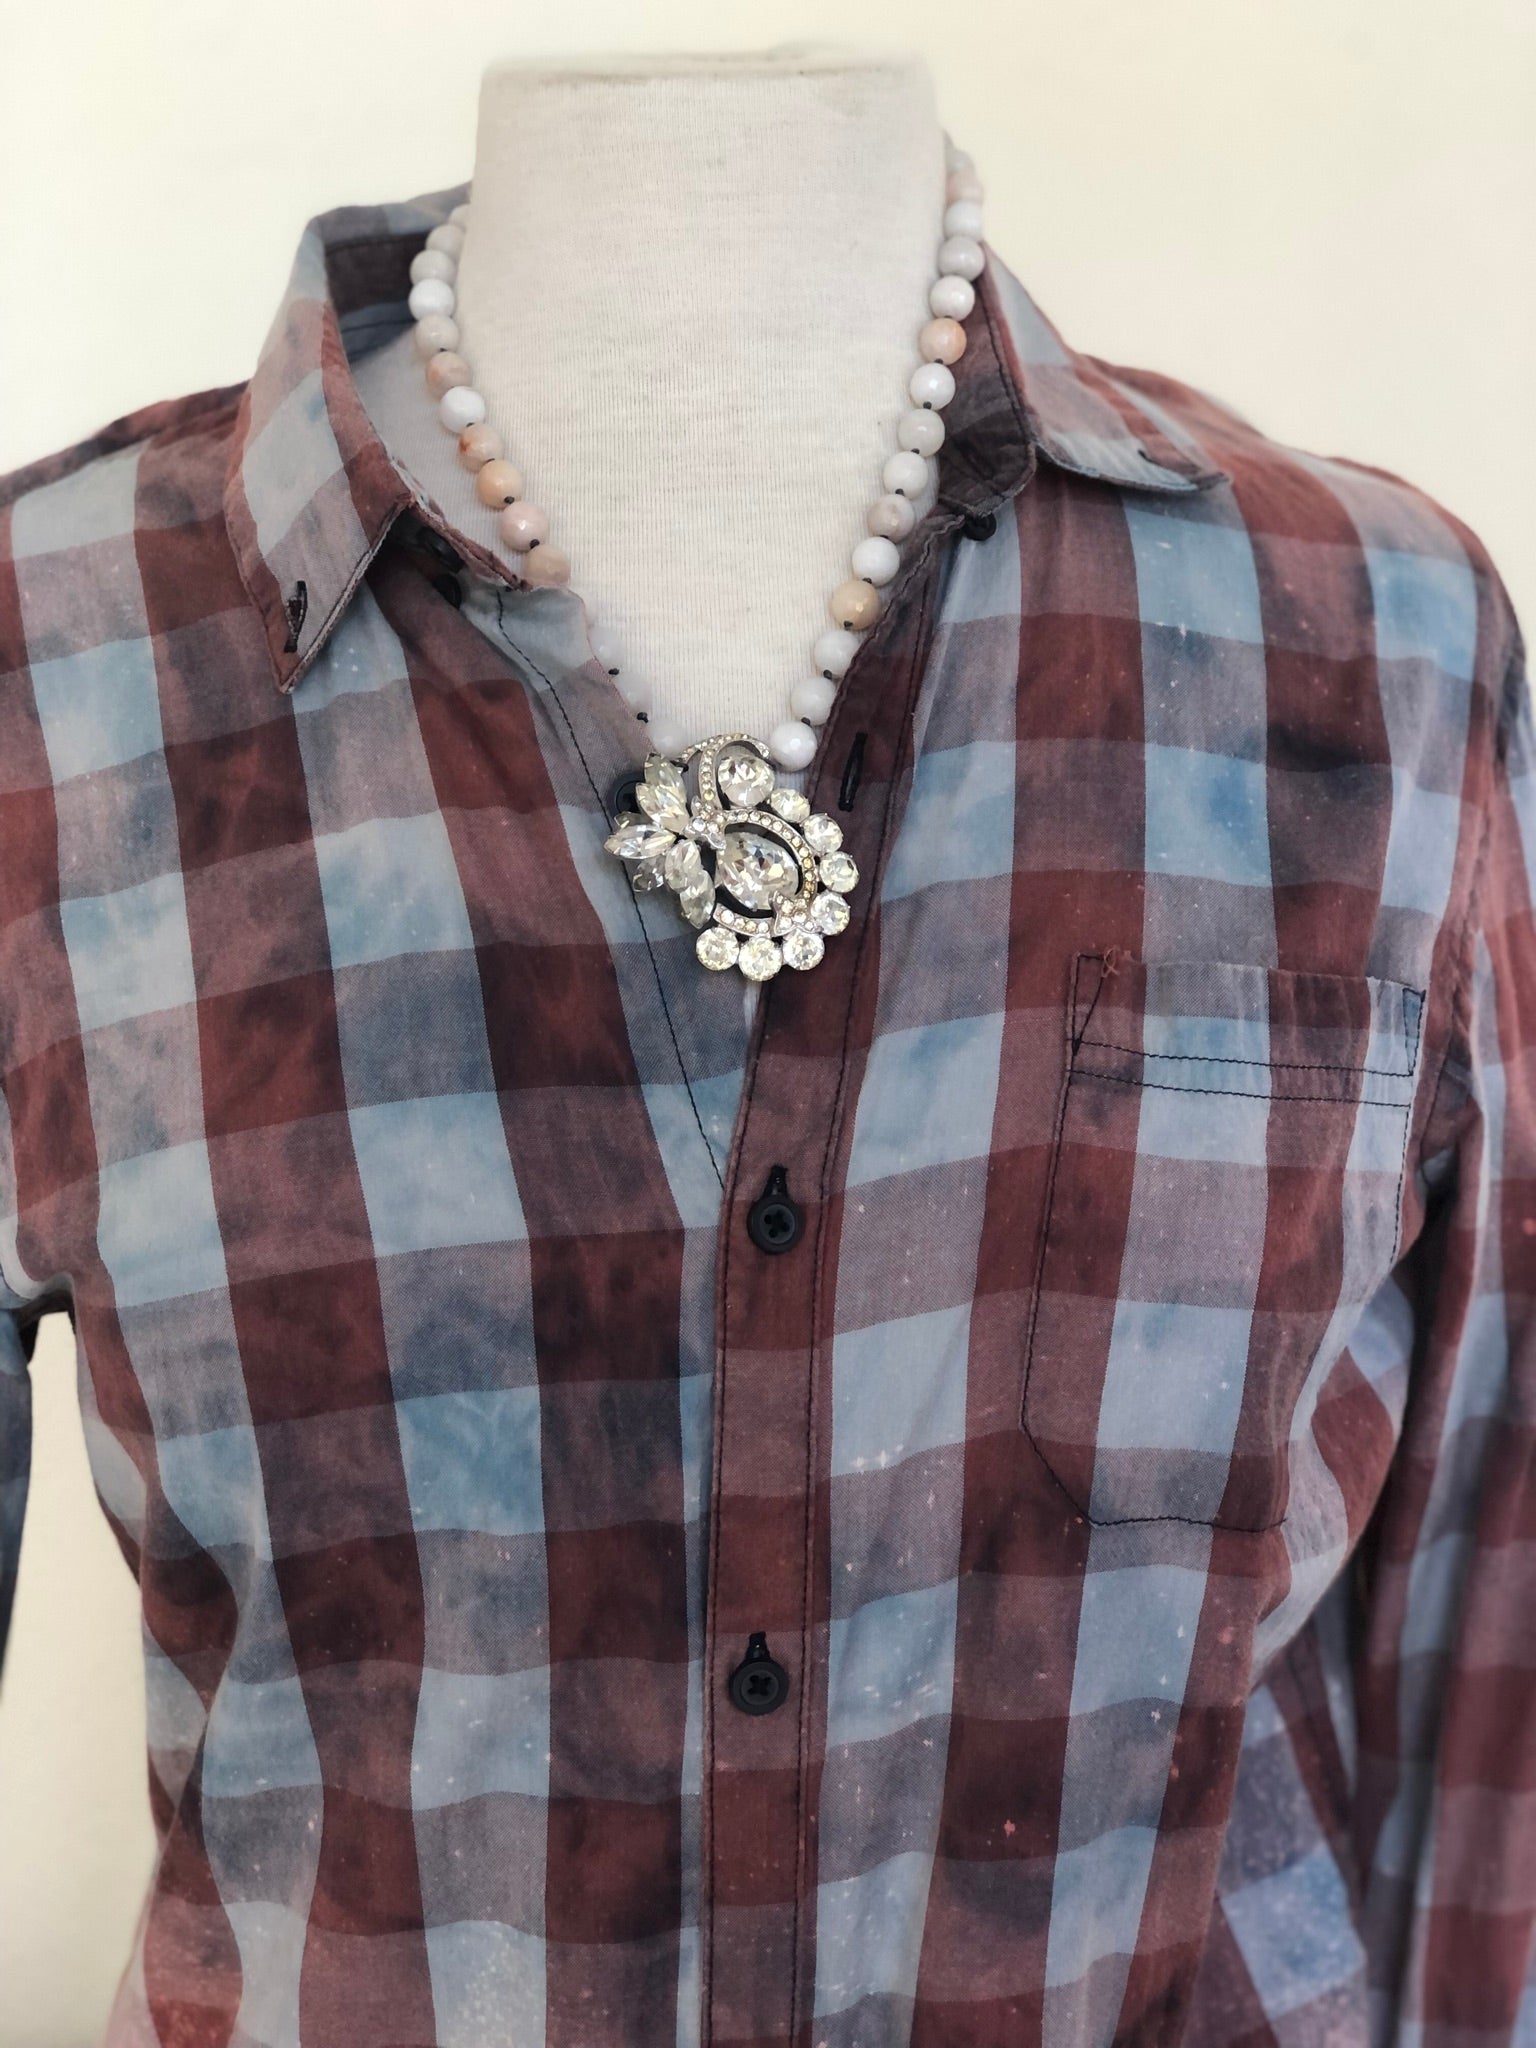 Vintage Eisenberg Necklace